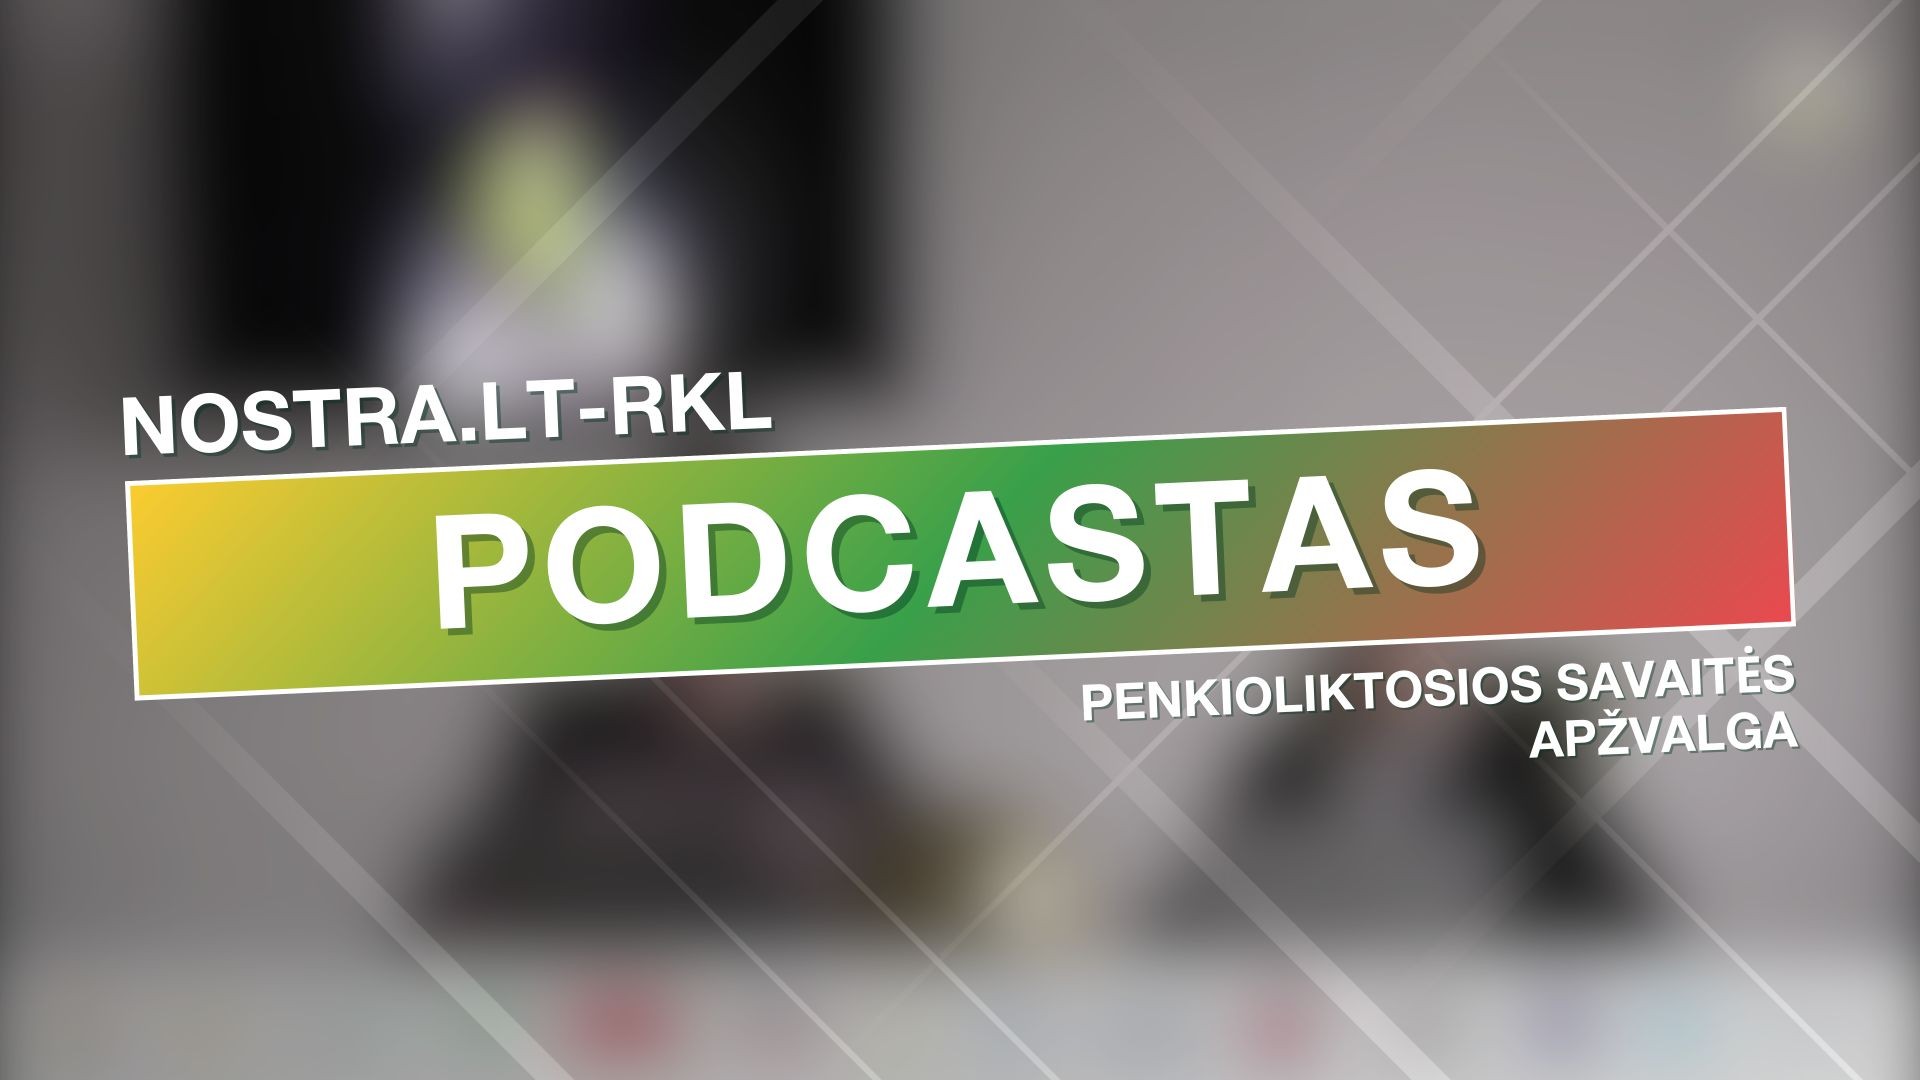 Nostra.lt-RKL podcastas: penkioliktosios savaitės apžvalga